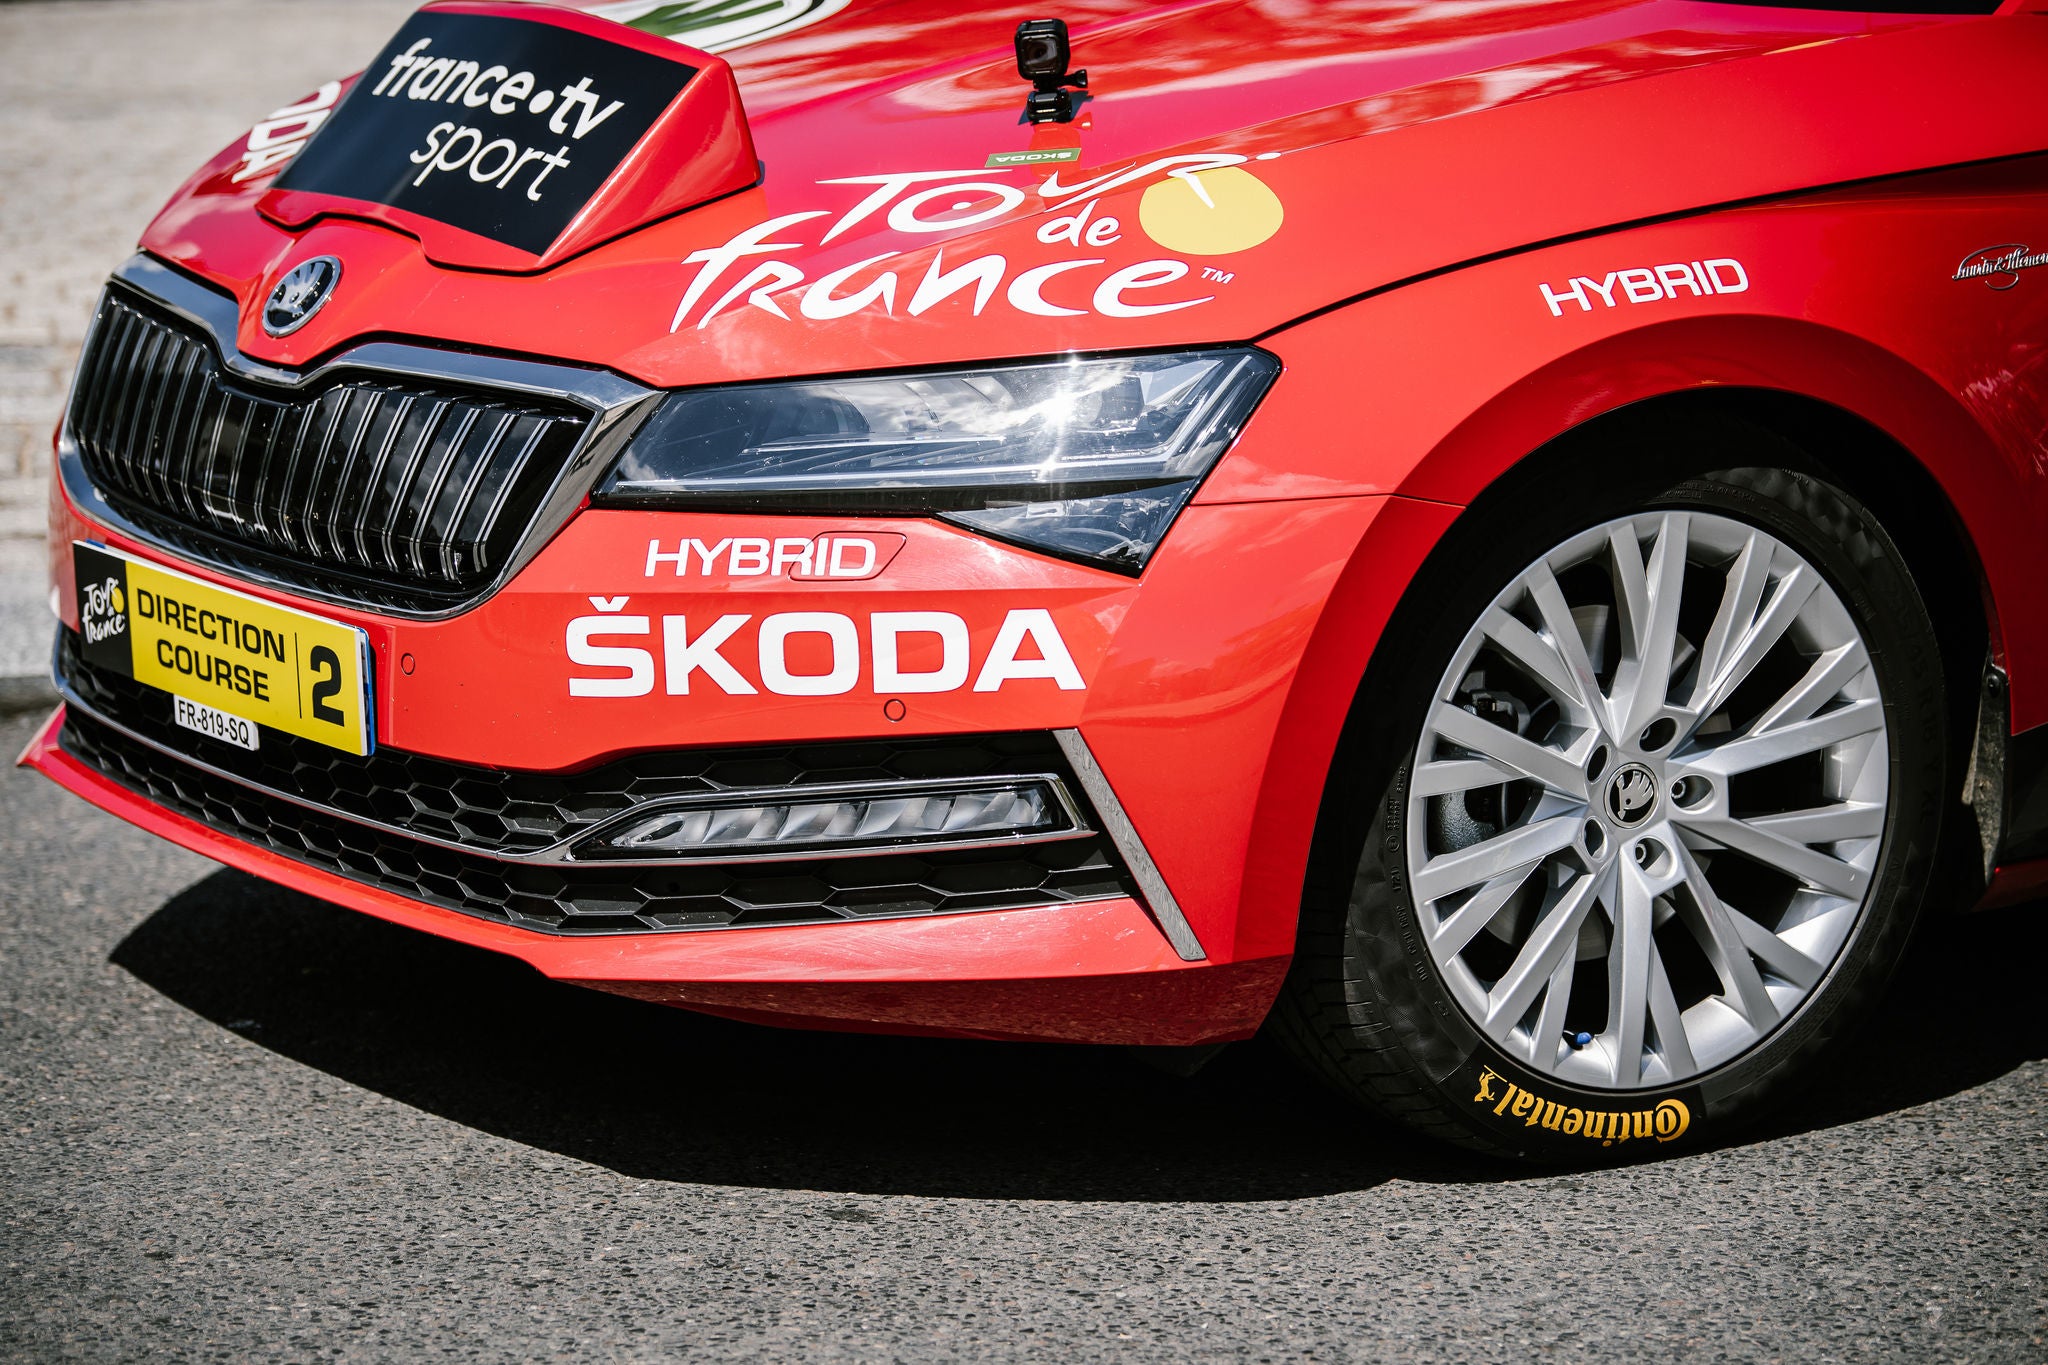 (imagem da frente do carro vermelho oficial da competição com diversos adesivos de patrocinadores, calçado com pneu da Continental)